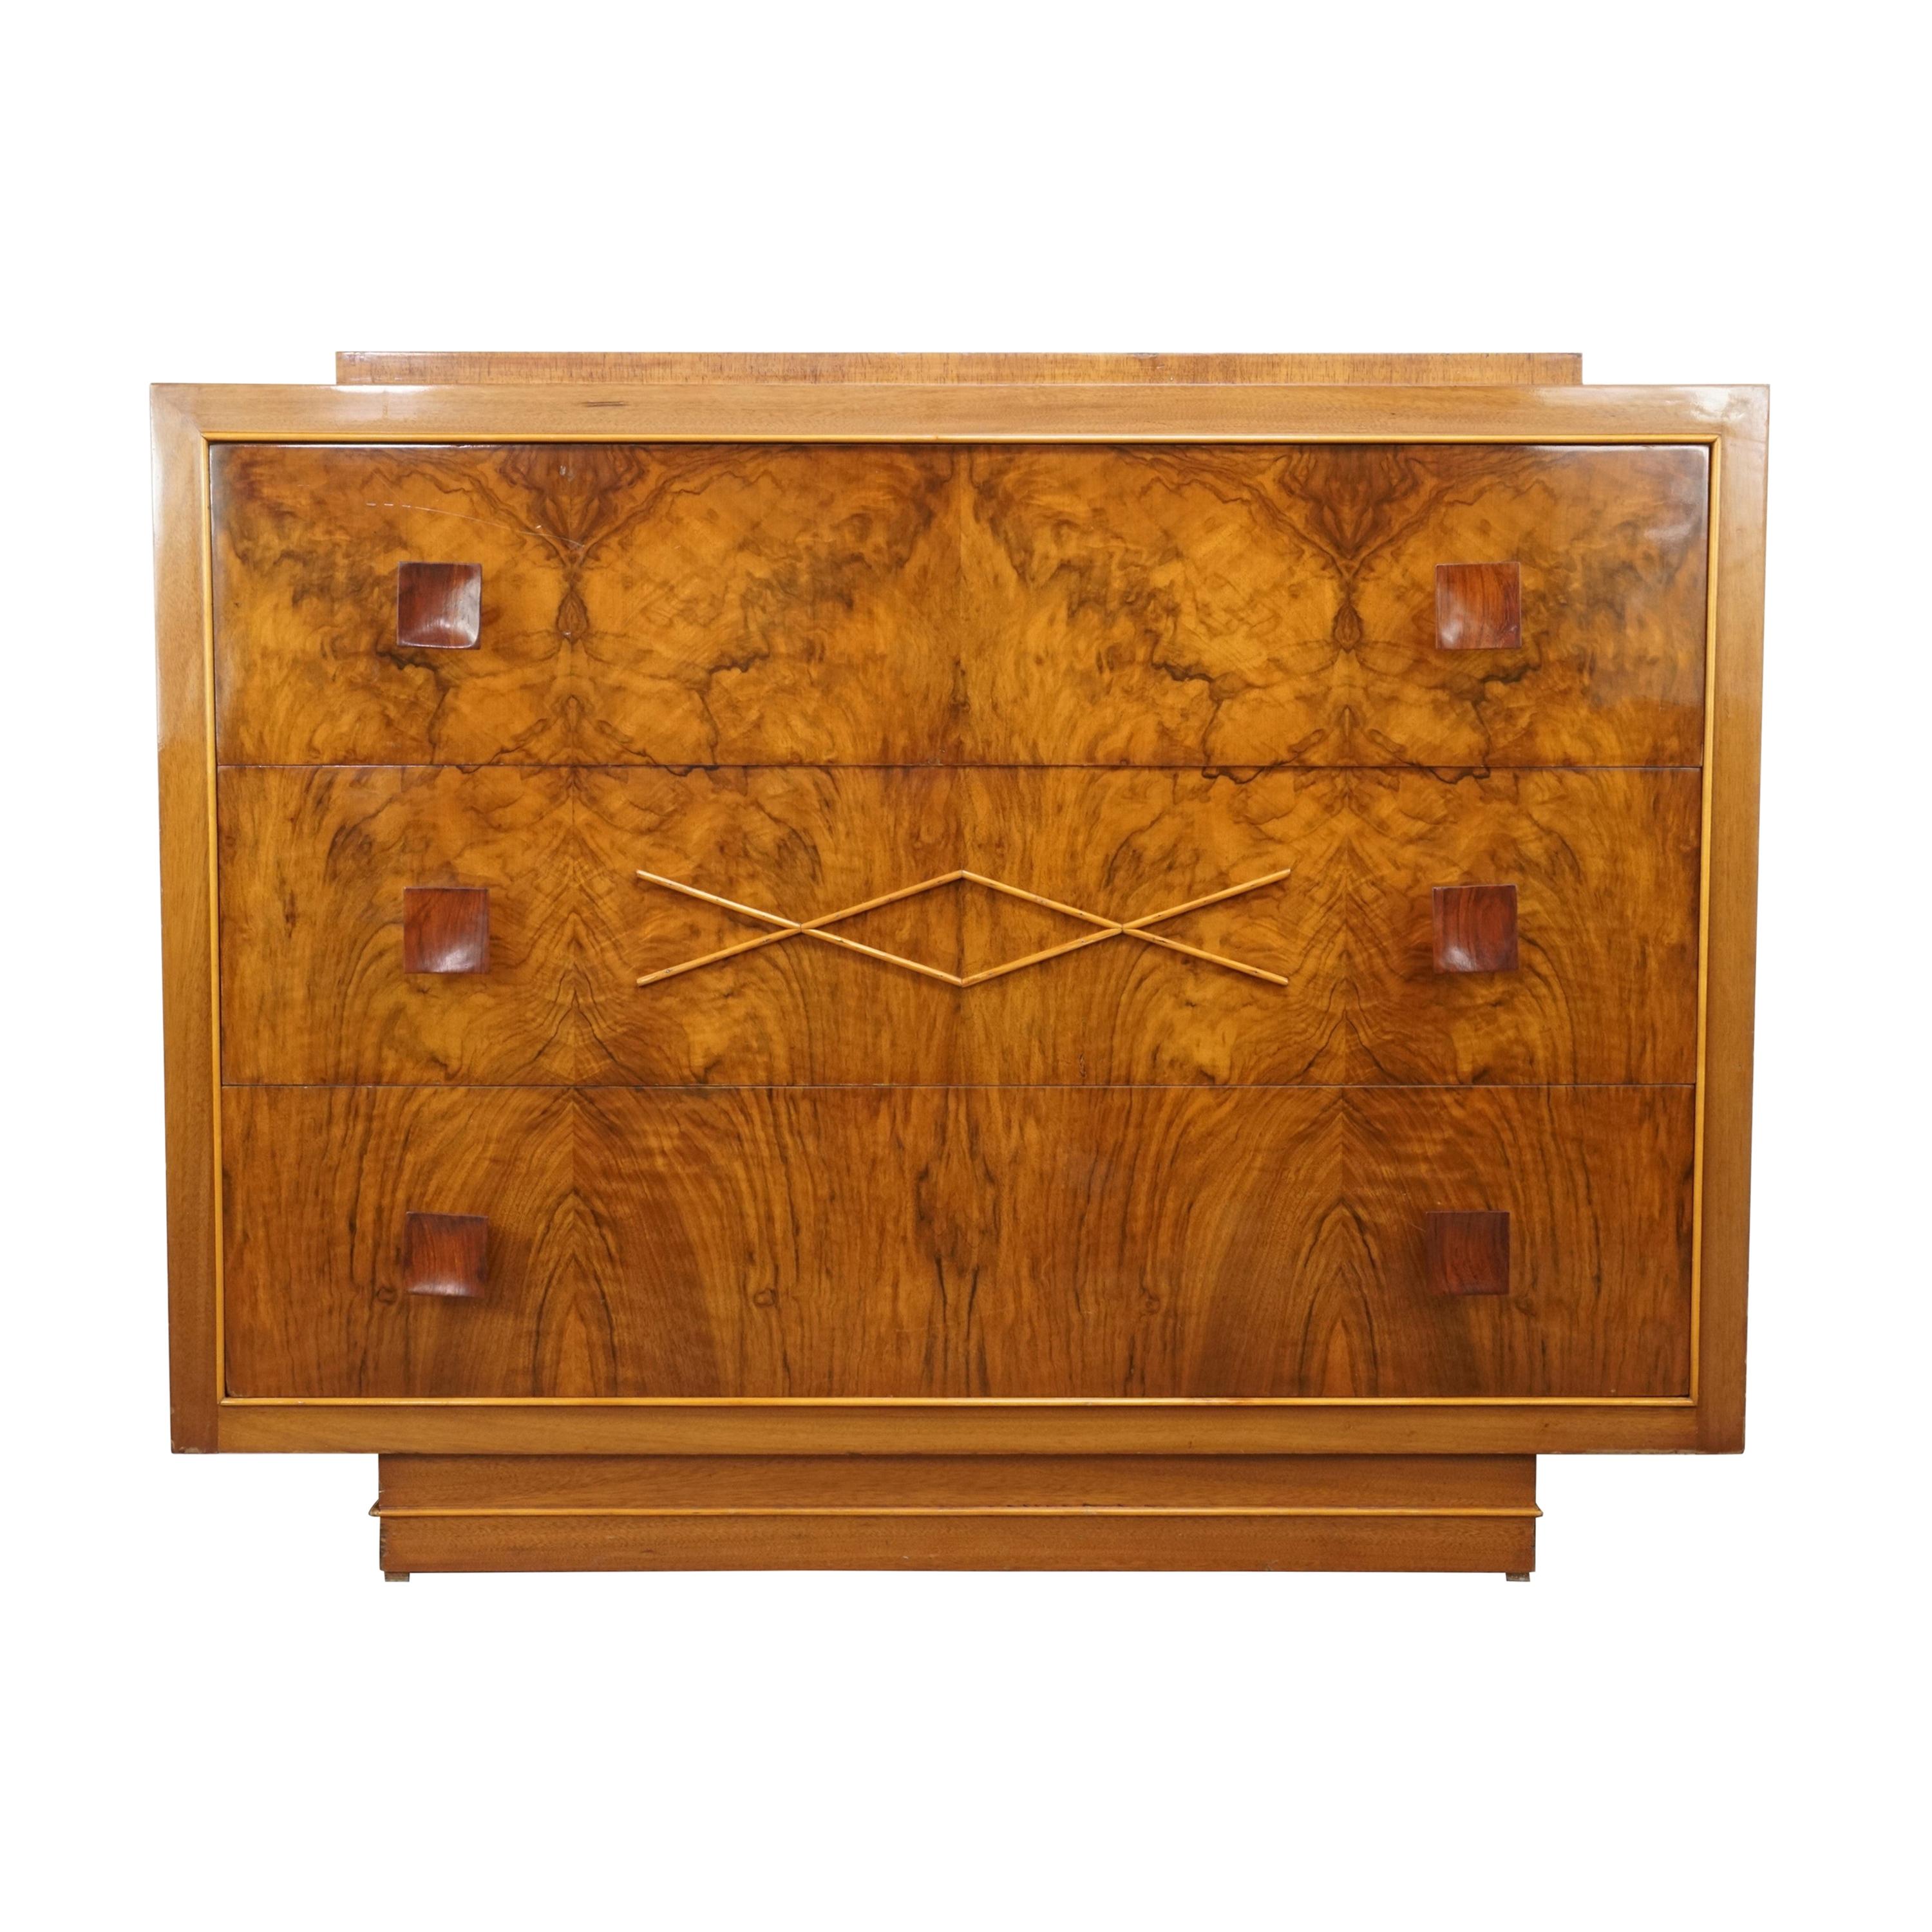 1940s Art Deco Burlwood Walnut Wooden De Coene Design Chest of Drawers